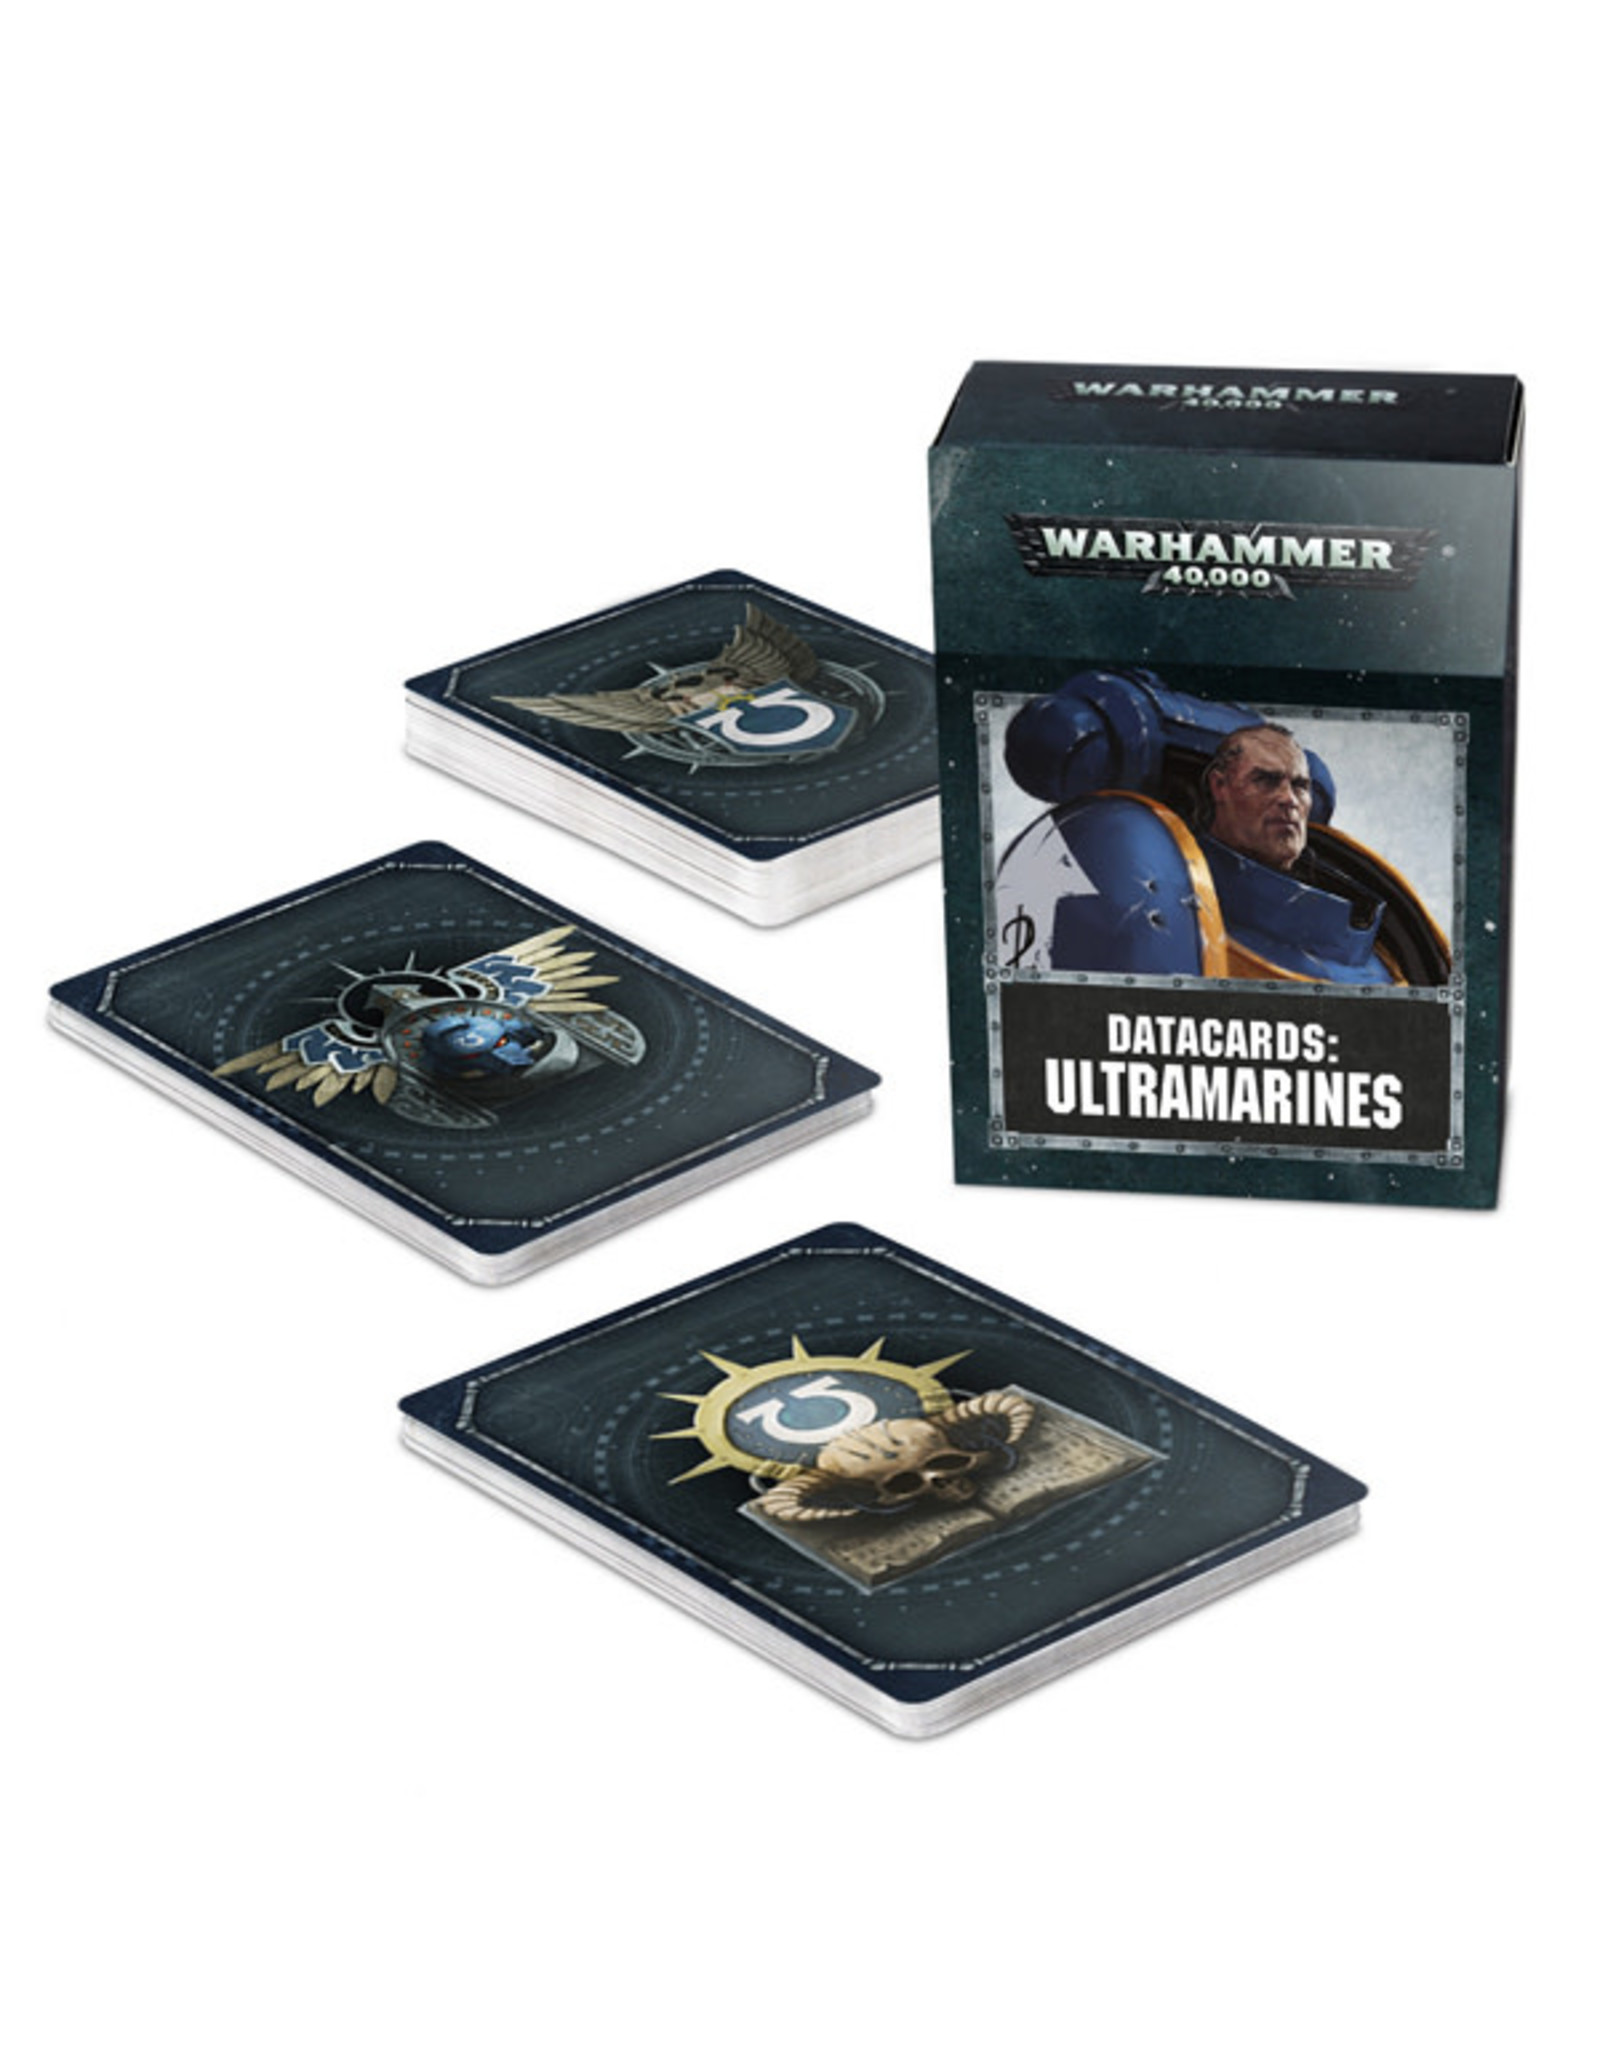 Warhammer 40k Ultramarines Datacards